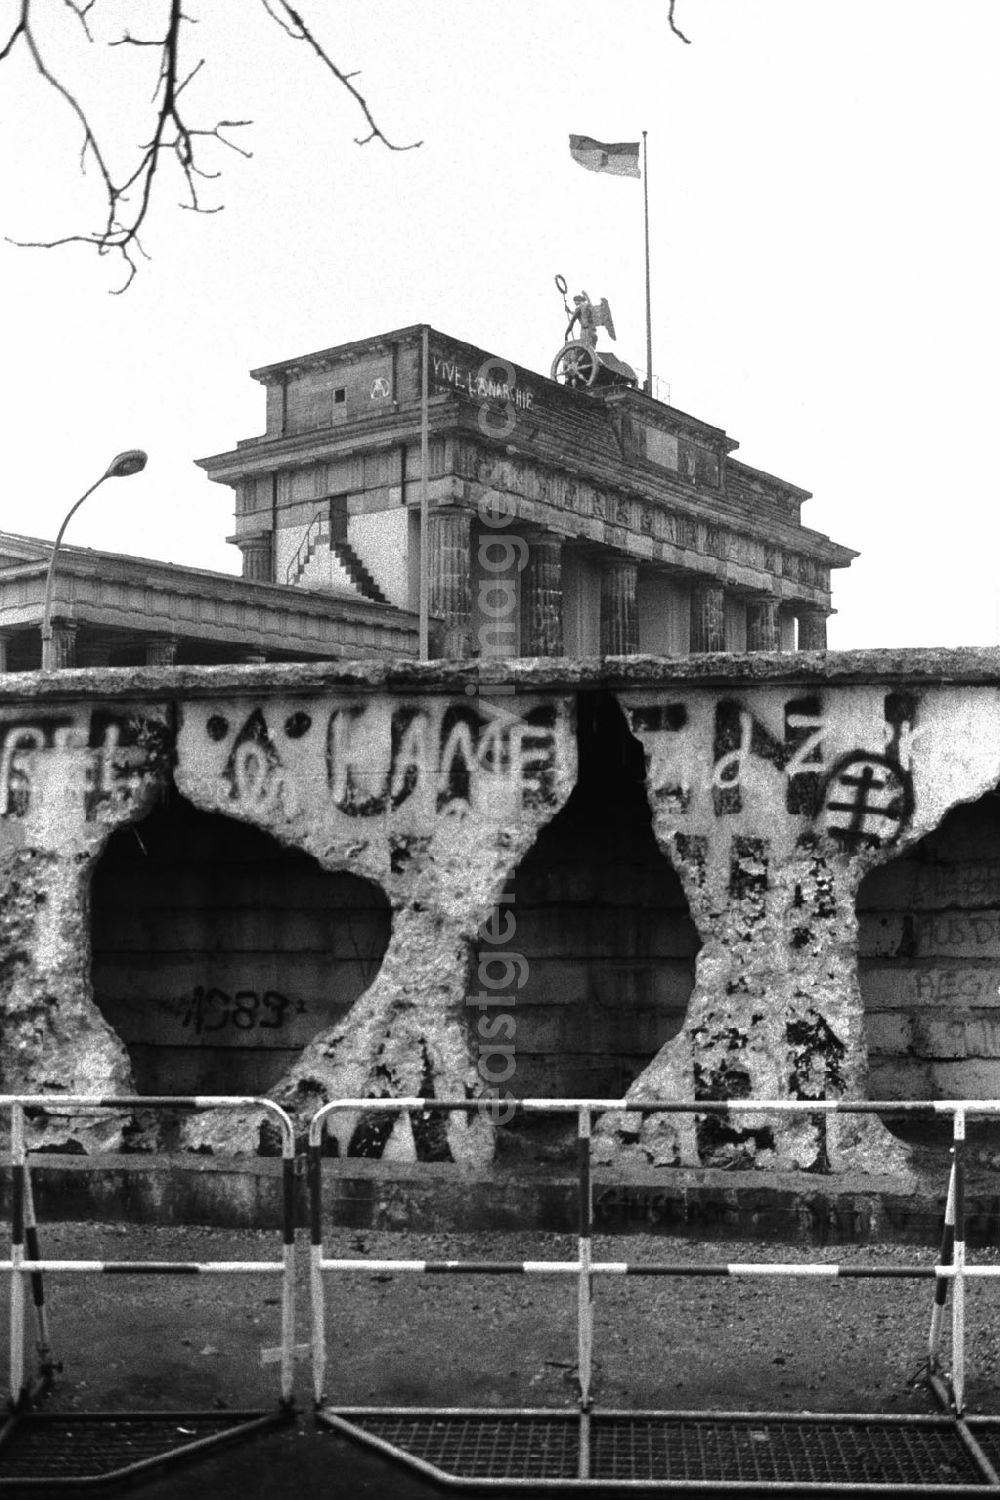 GDR photo archive: Berlin-MitteBerlin-Tiergarten - Durch Mauerspechte gezeichnete Mauerreste vor dem Brandenburger Tor.